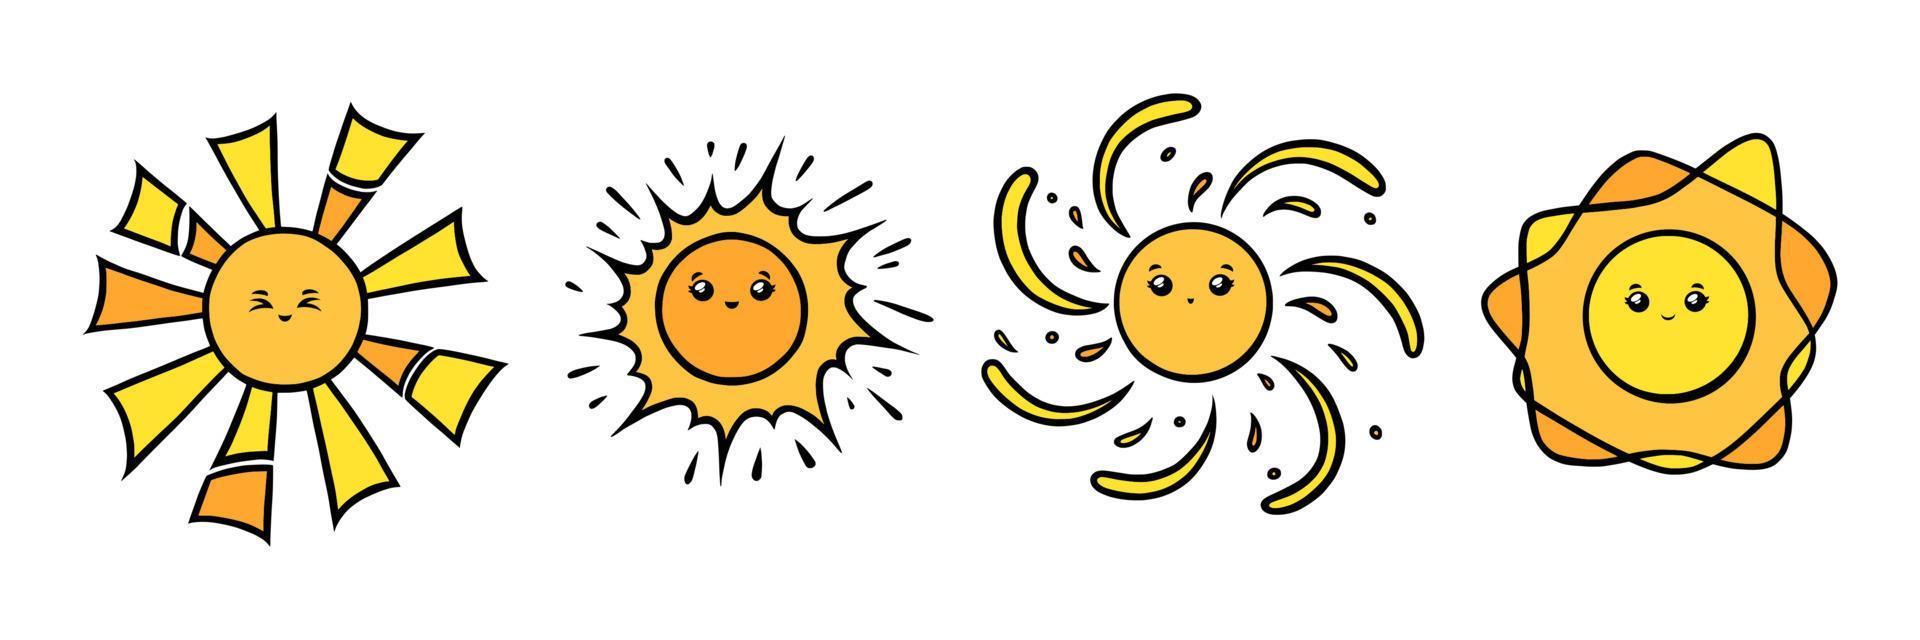 personagens do sol kawaii com olhos e sorrisos. rostos sorridentes de sol amarelo no estilo doodle. ilustração vetorial preto e branco vetor